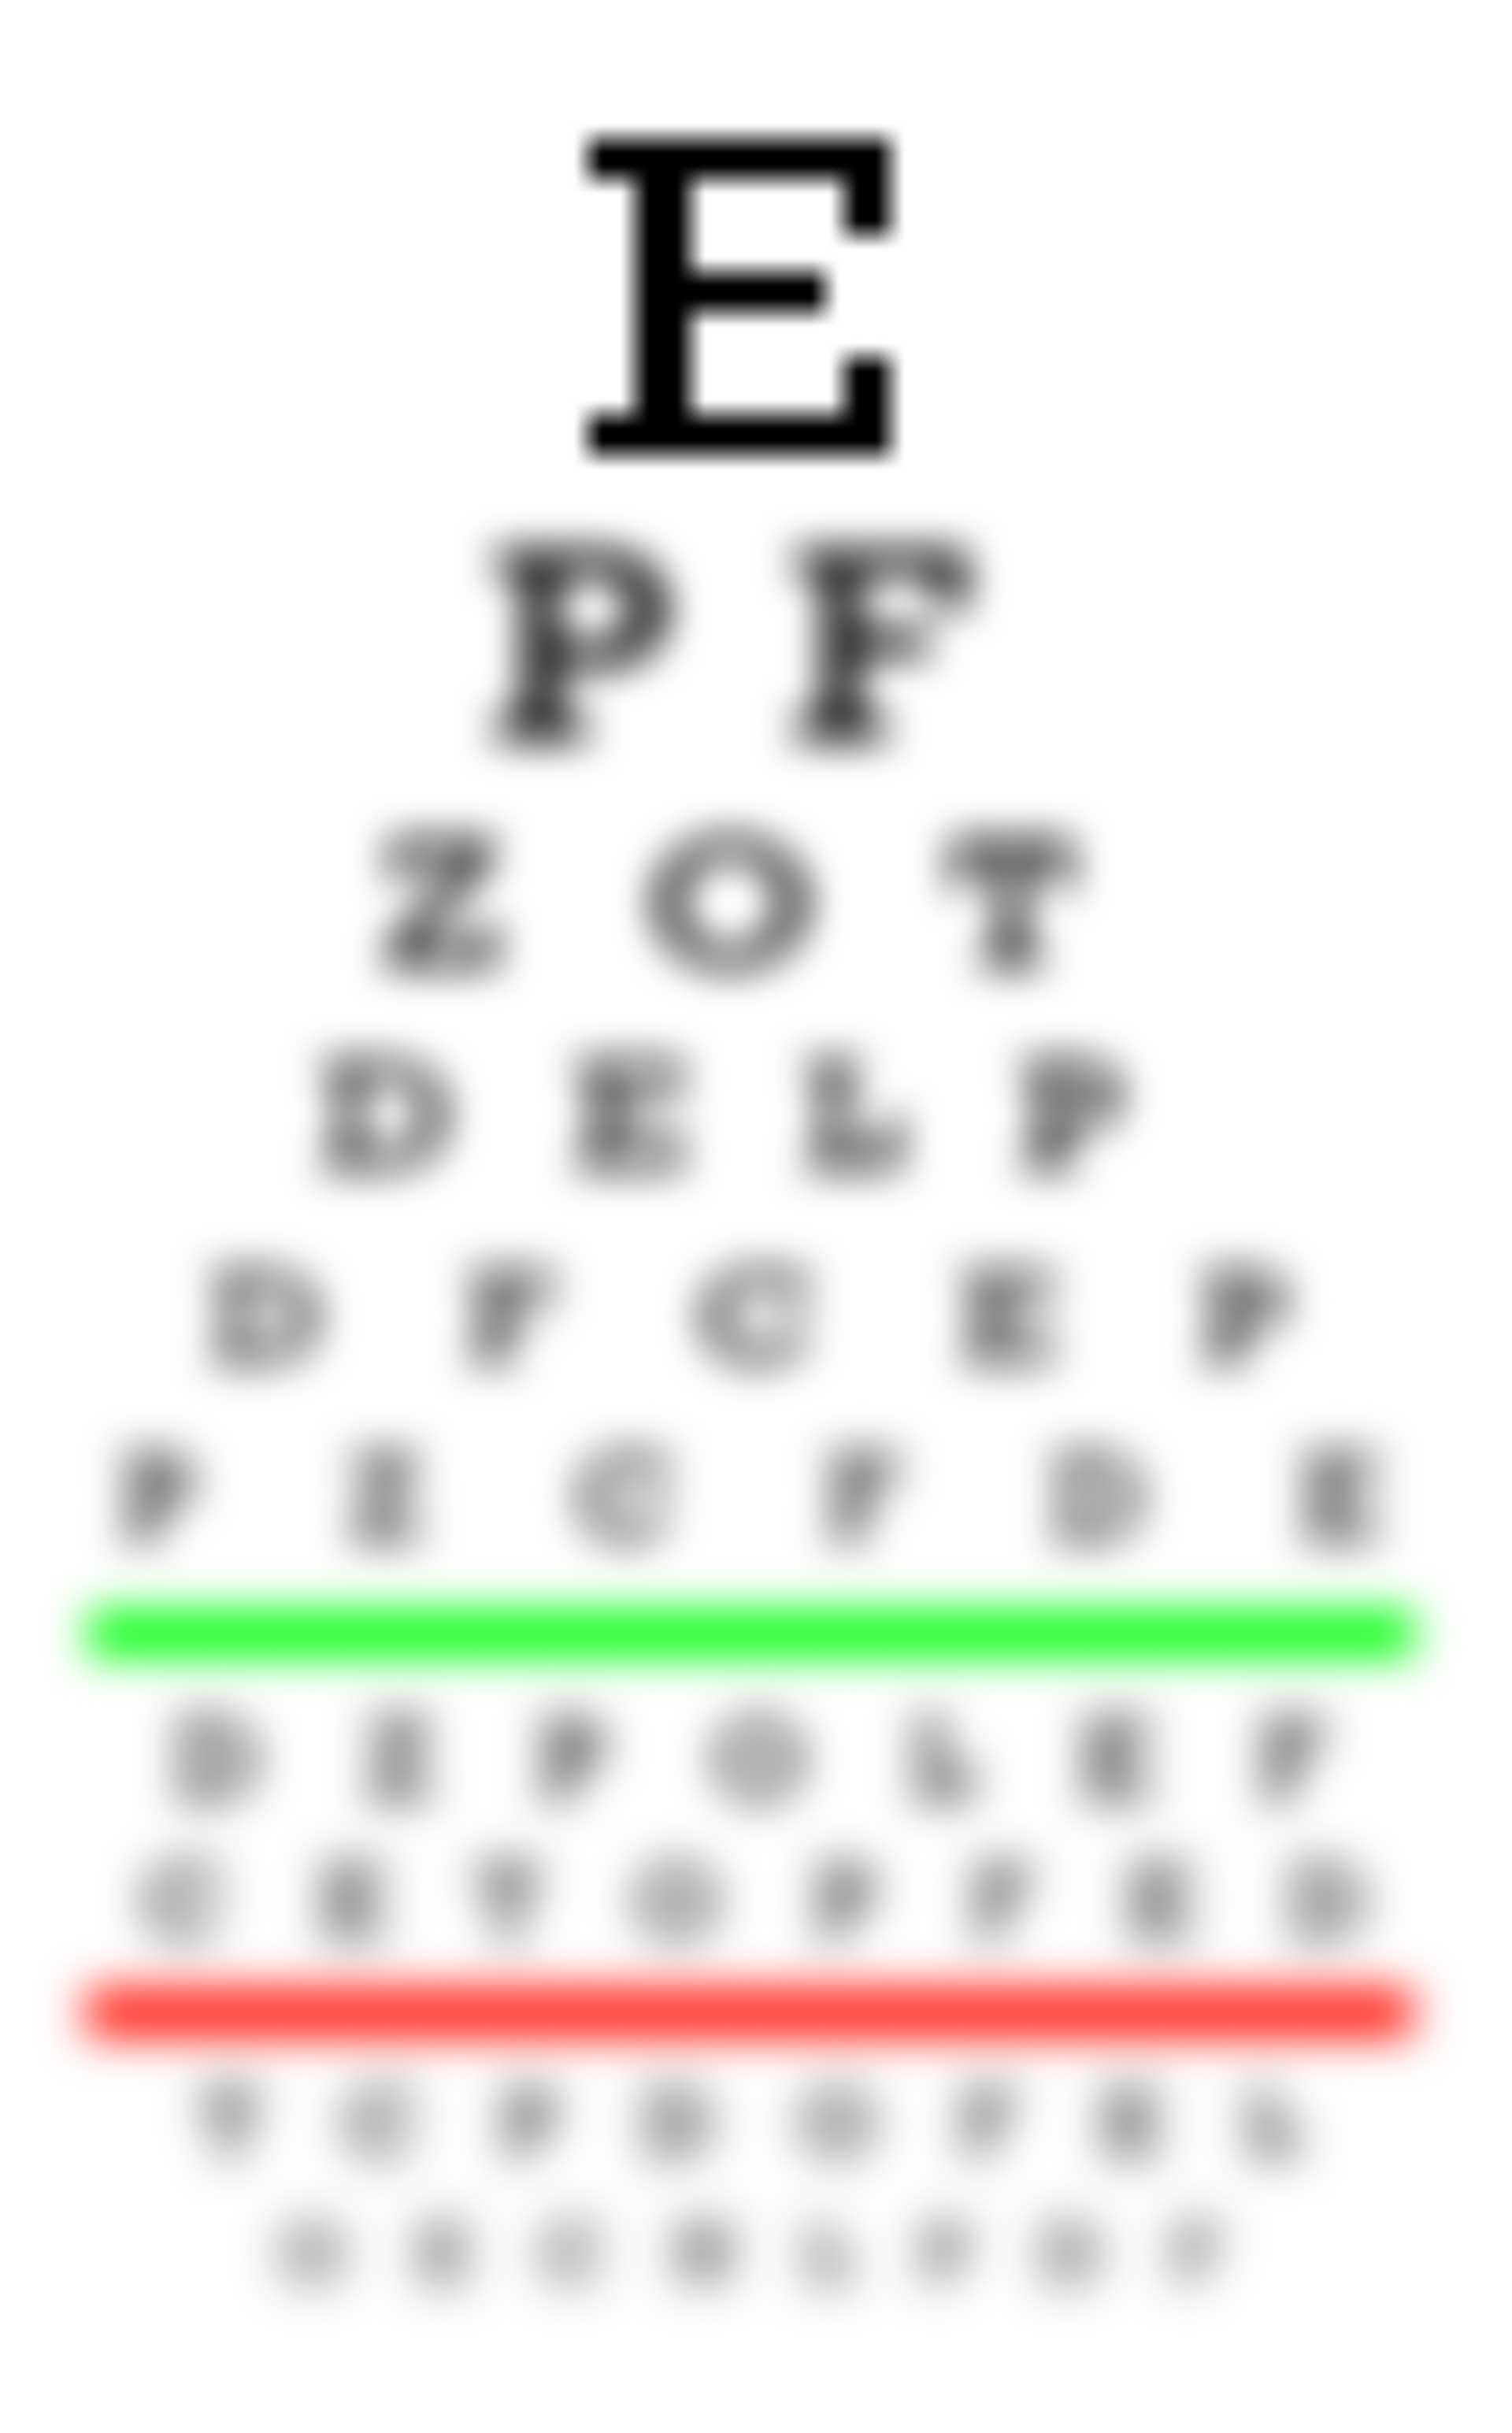 Látáskorrekció astigmatizmus és hyperopia esetén